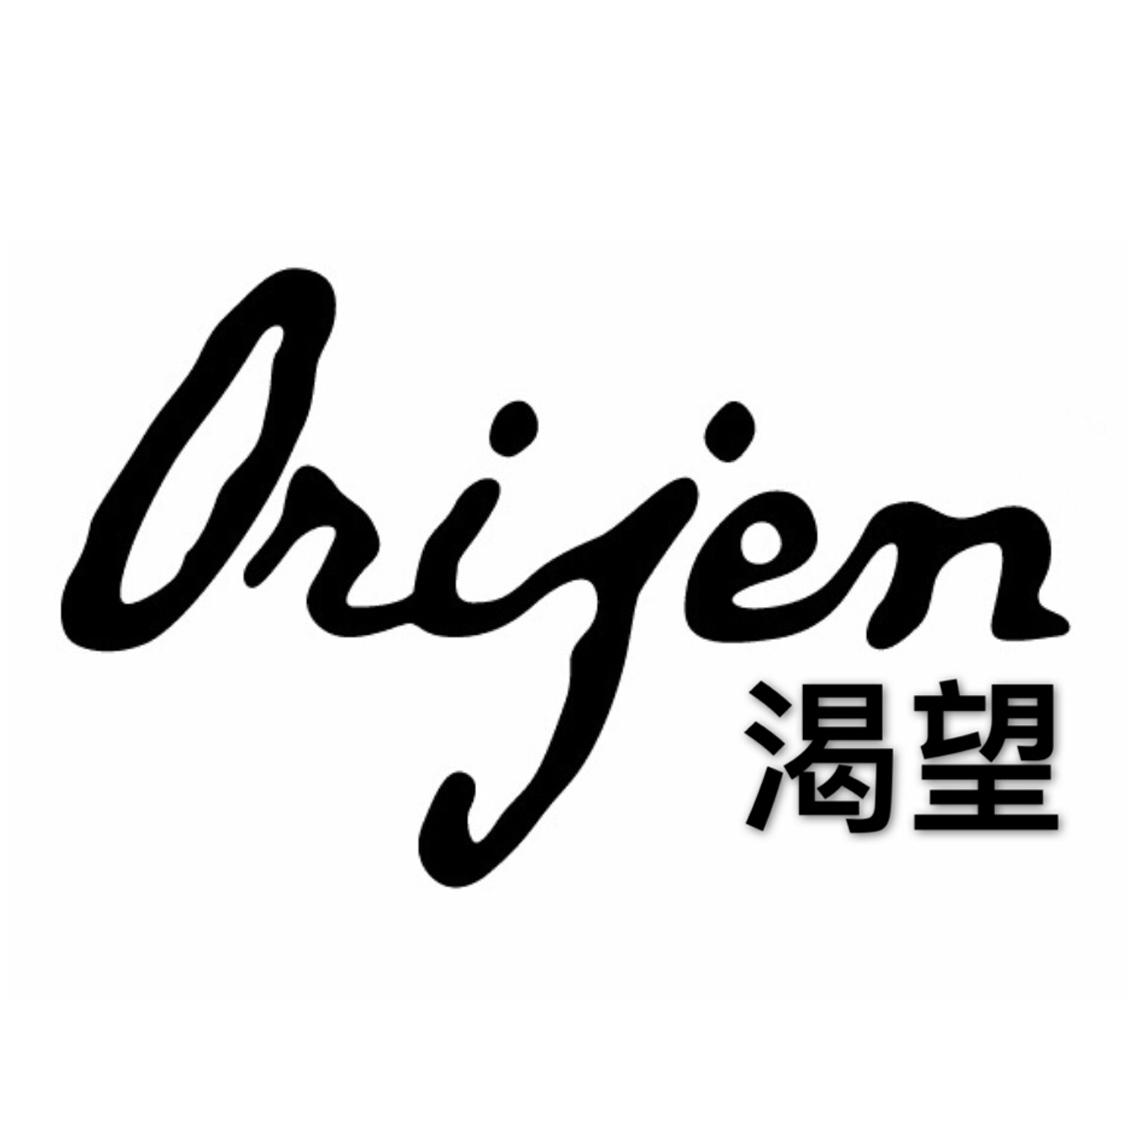 渴望orijen - 企业商标大全 - 商标信息查询 - 爱企查